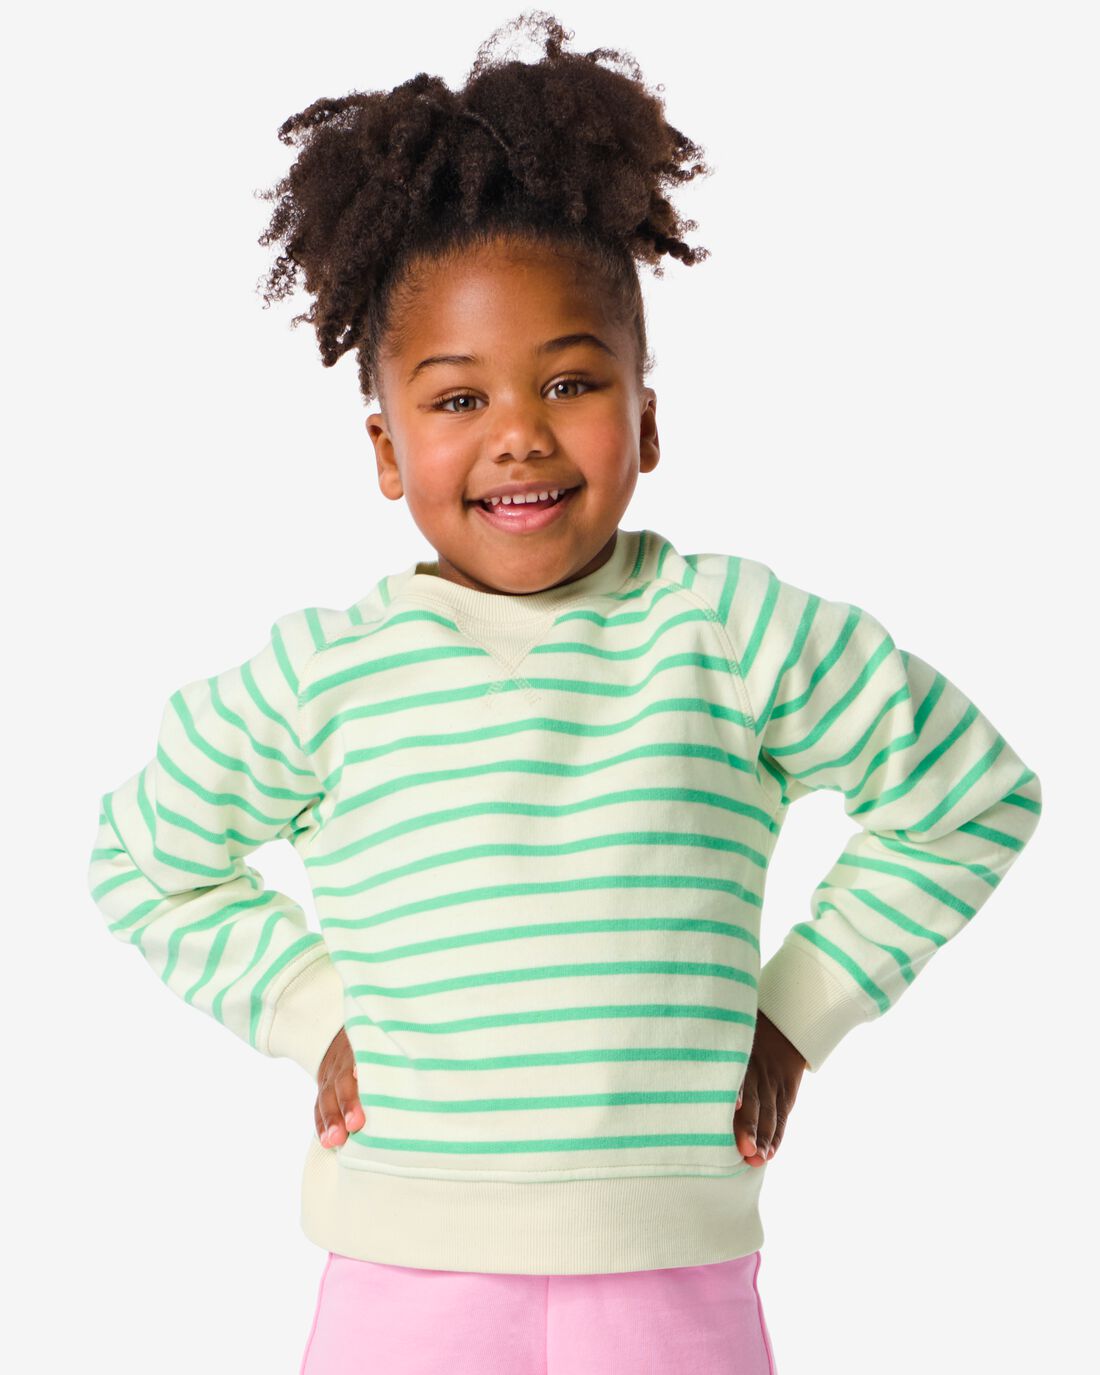 HEMA Kindersweater Strepen Groen (groen)